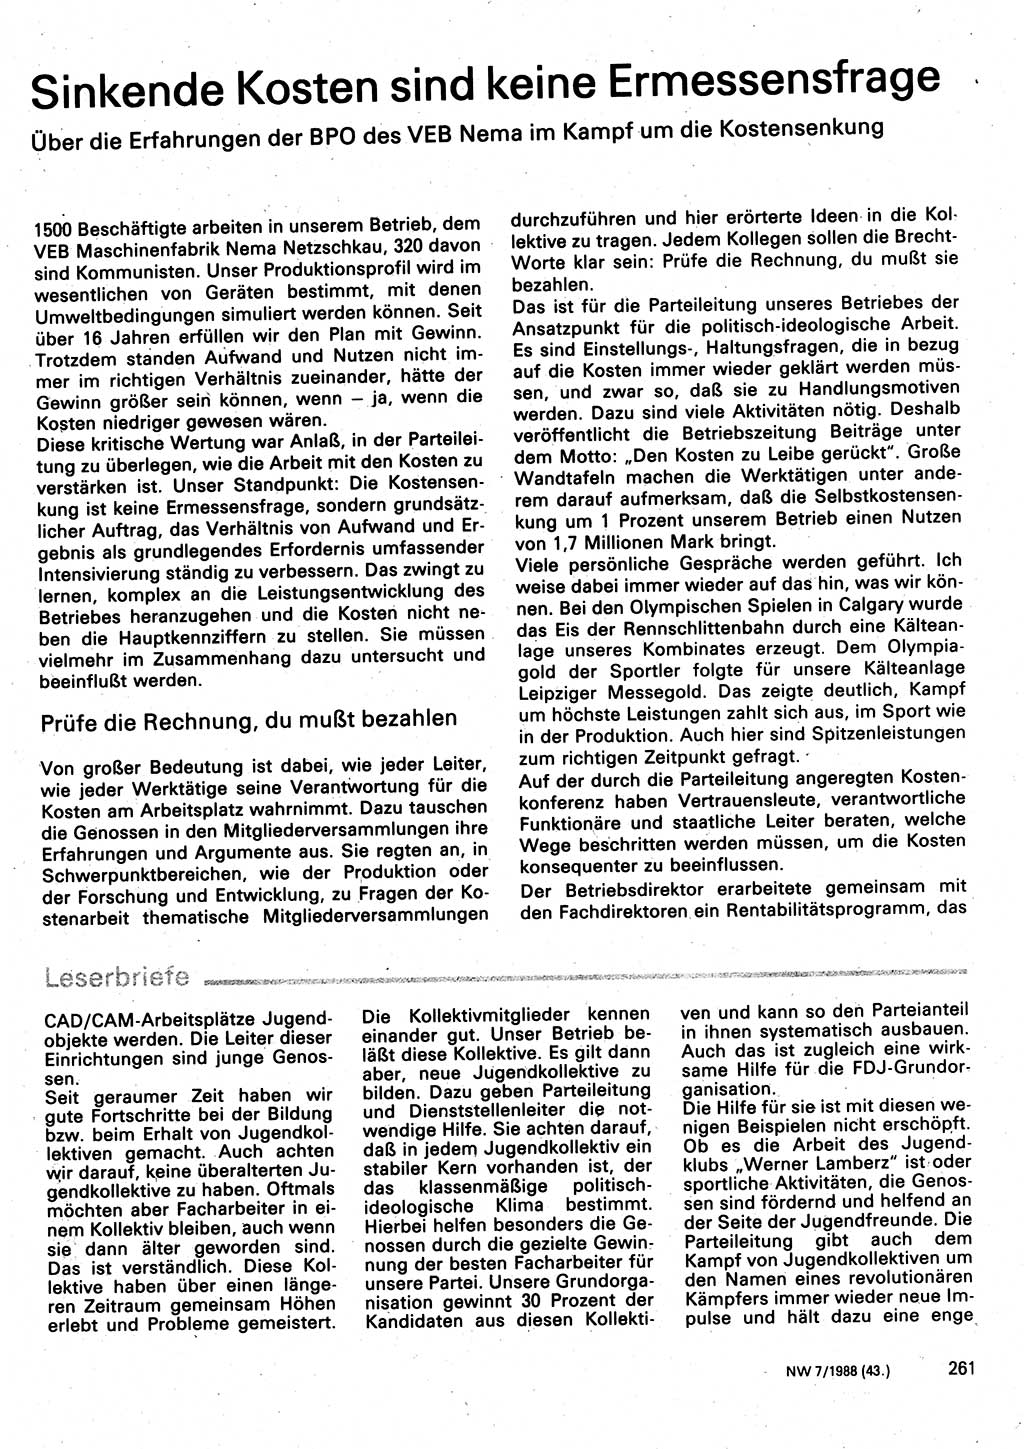 Neuer Weg (NW), Organ des Zentralkomitees (ZK) der SED (Sozialistische Einheitspartei Deutschlands) für Fragen des Parteilebens, 43. Jahrgang [Deutsche Demokratische Republik (DDR)] 1988, Seite 261 (NW ZK SED DDR 1988, S. 261)